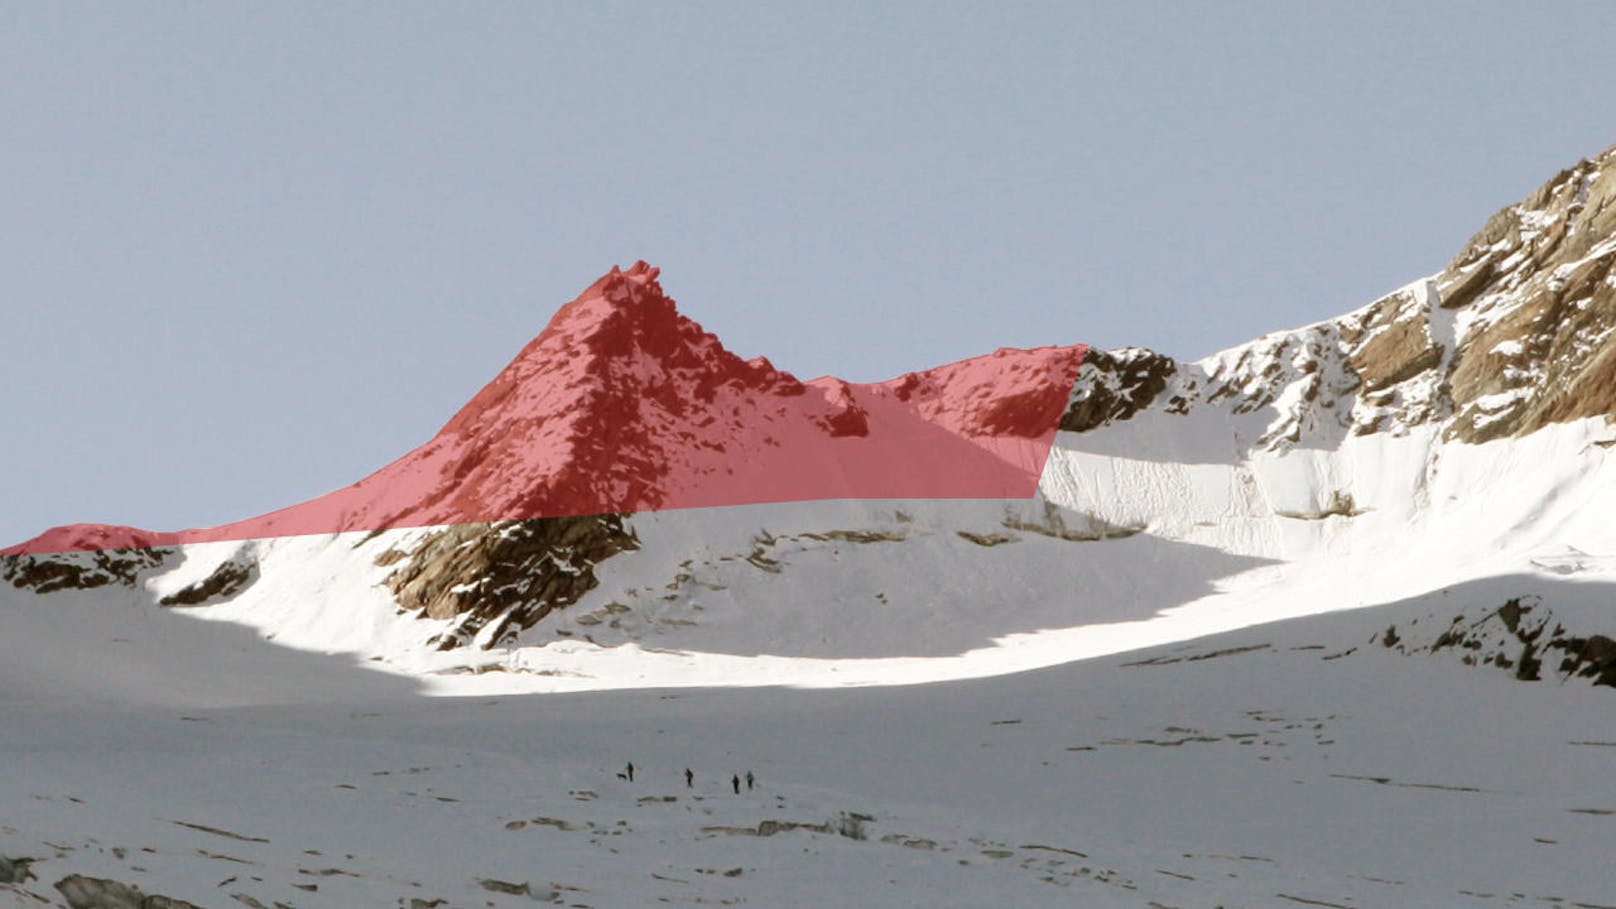 Dieser Berggipfel östlich des Linken Fernerkogels soll zudem weggesprengt und um fast 40 Höhenmeter abgetragen werden, um Platz für eine der Seilbahnstationen zu machen.